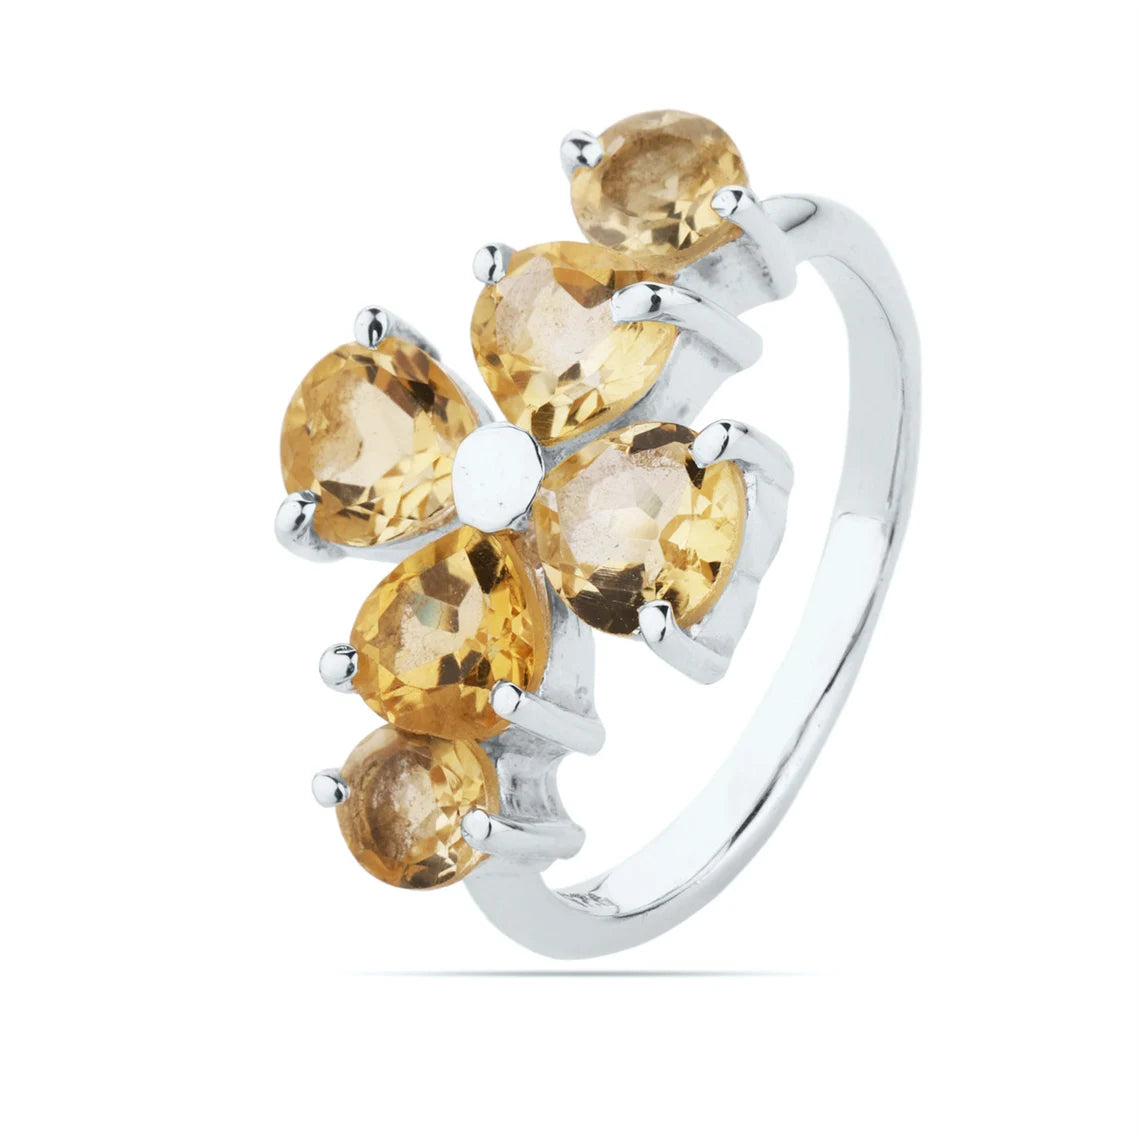 Citrine Stone Ring, Multi Stone Ring, 925 Sterling Silver, Prong Set Ring,925 Sterling Silver, Handmade Ring, Designer Ring, Promise Ring